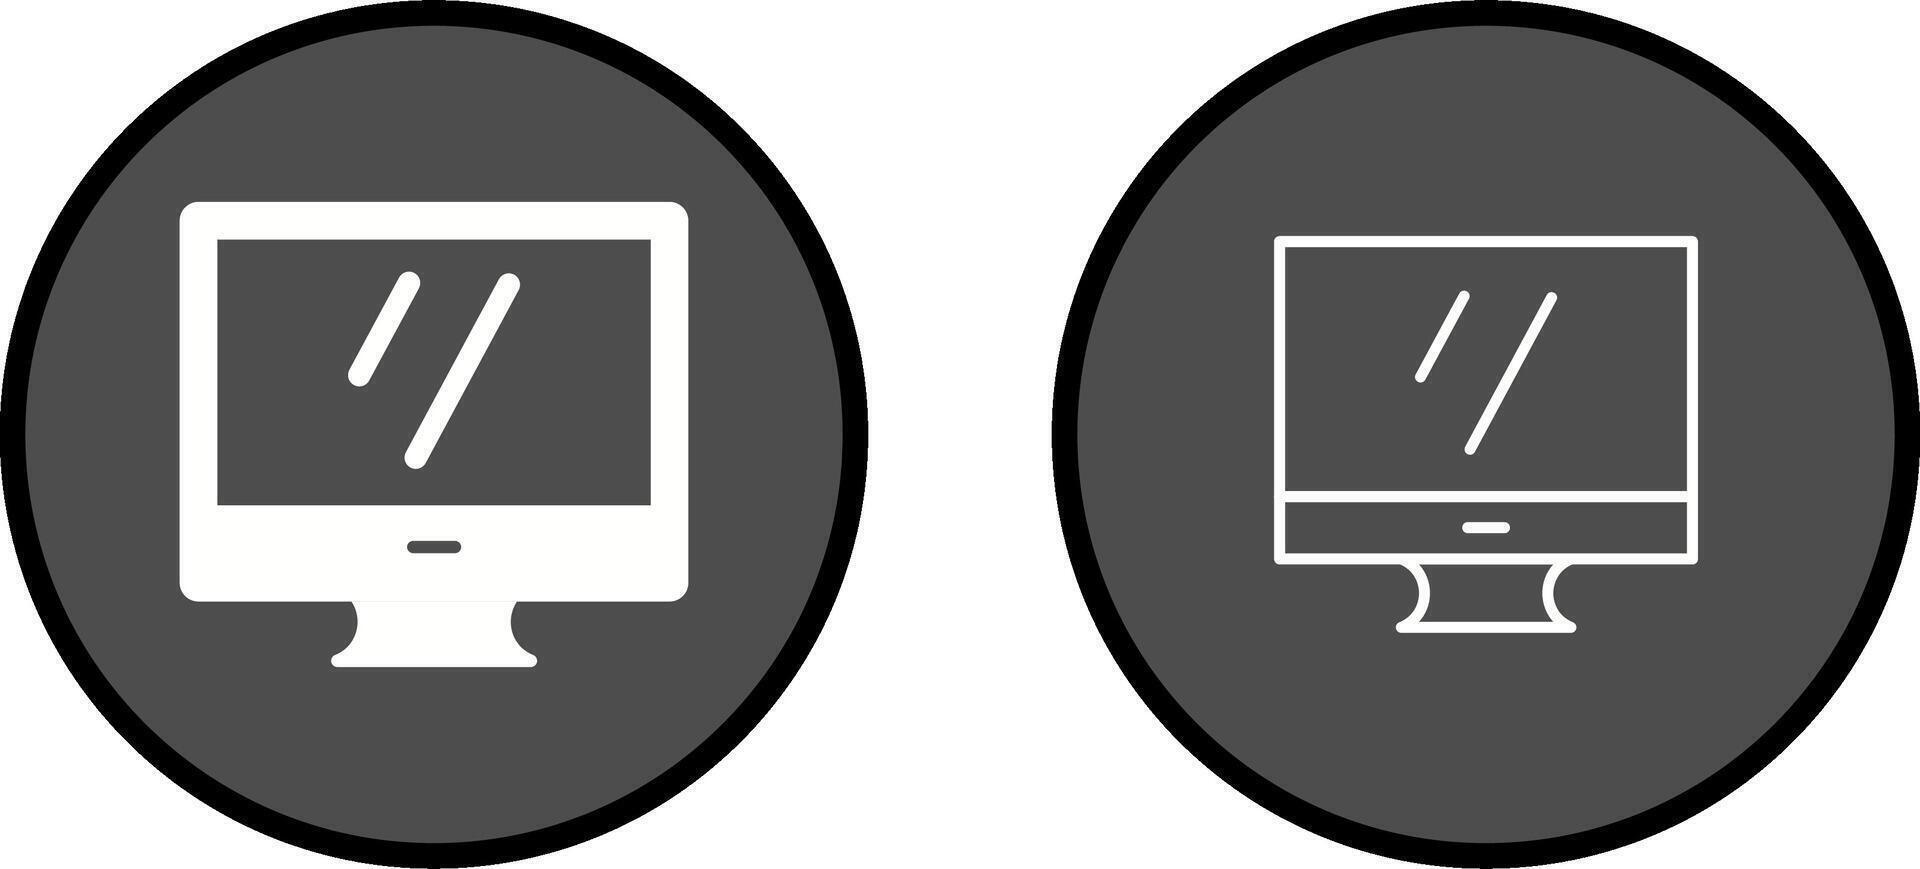 Screen Vector Icon